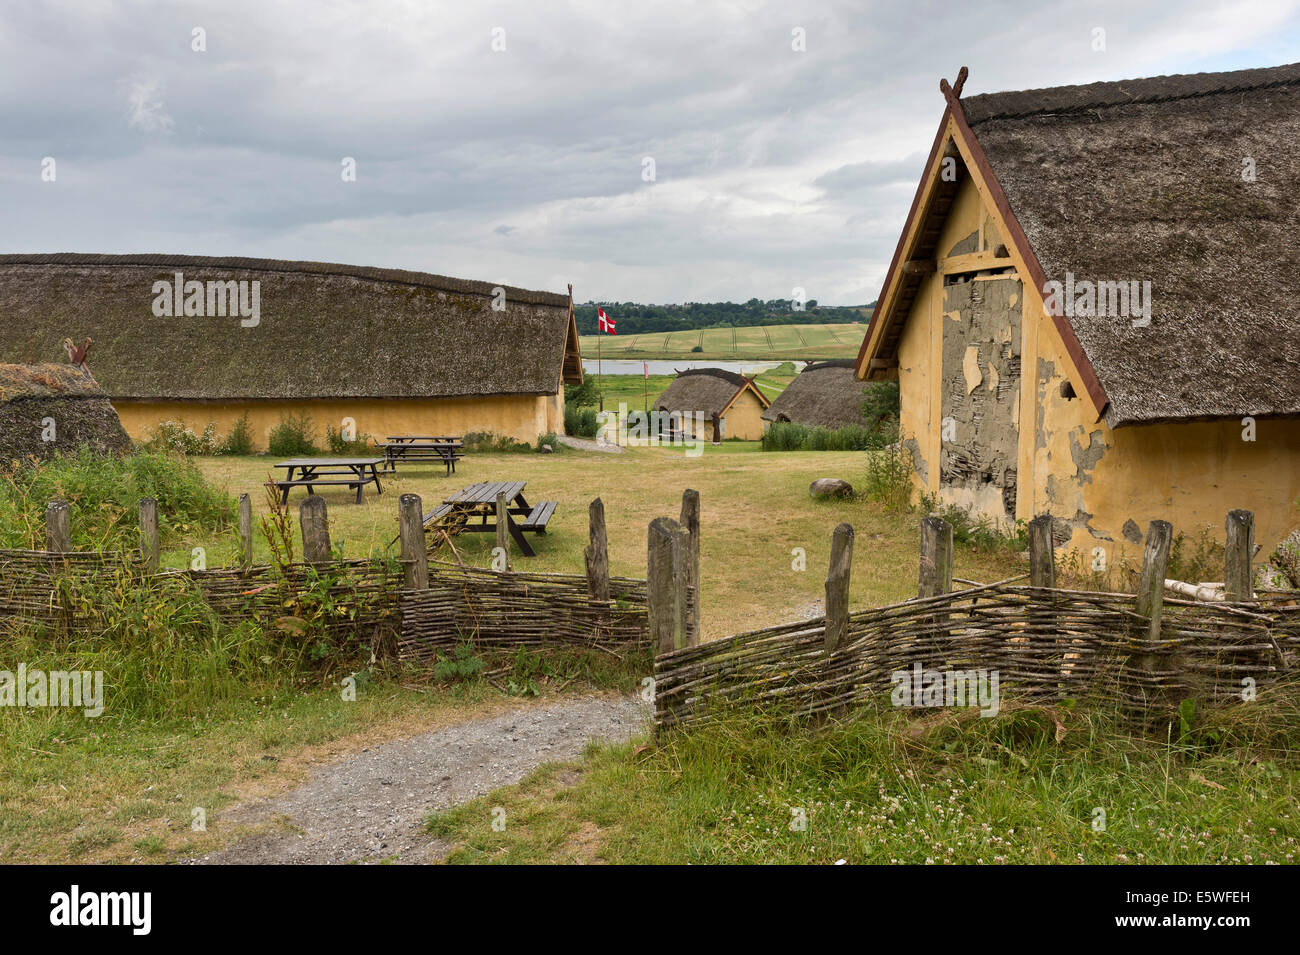 Rekonstruierten Bauernhof mit neun Häuser eines groß angelegten Bauern aus der Wikingerzeit, Viking Center Fyrkat, Fyrkat, Hobro, Dänemark Stockfoto